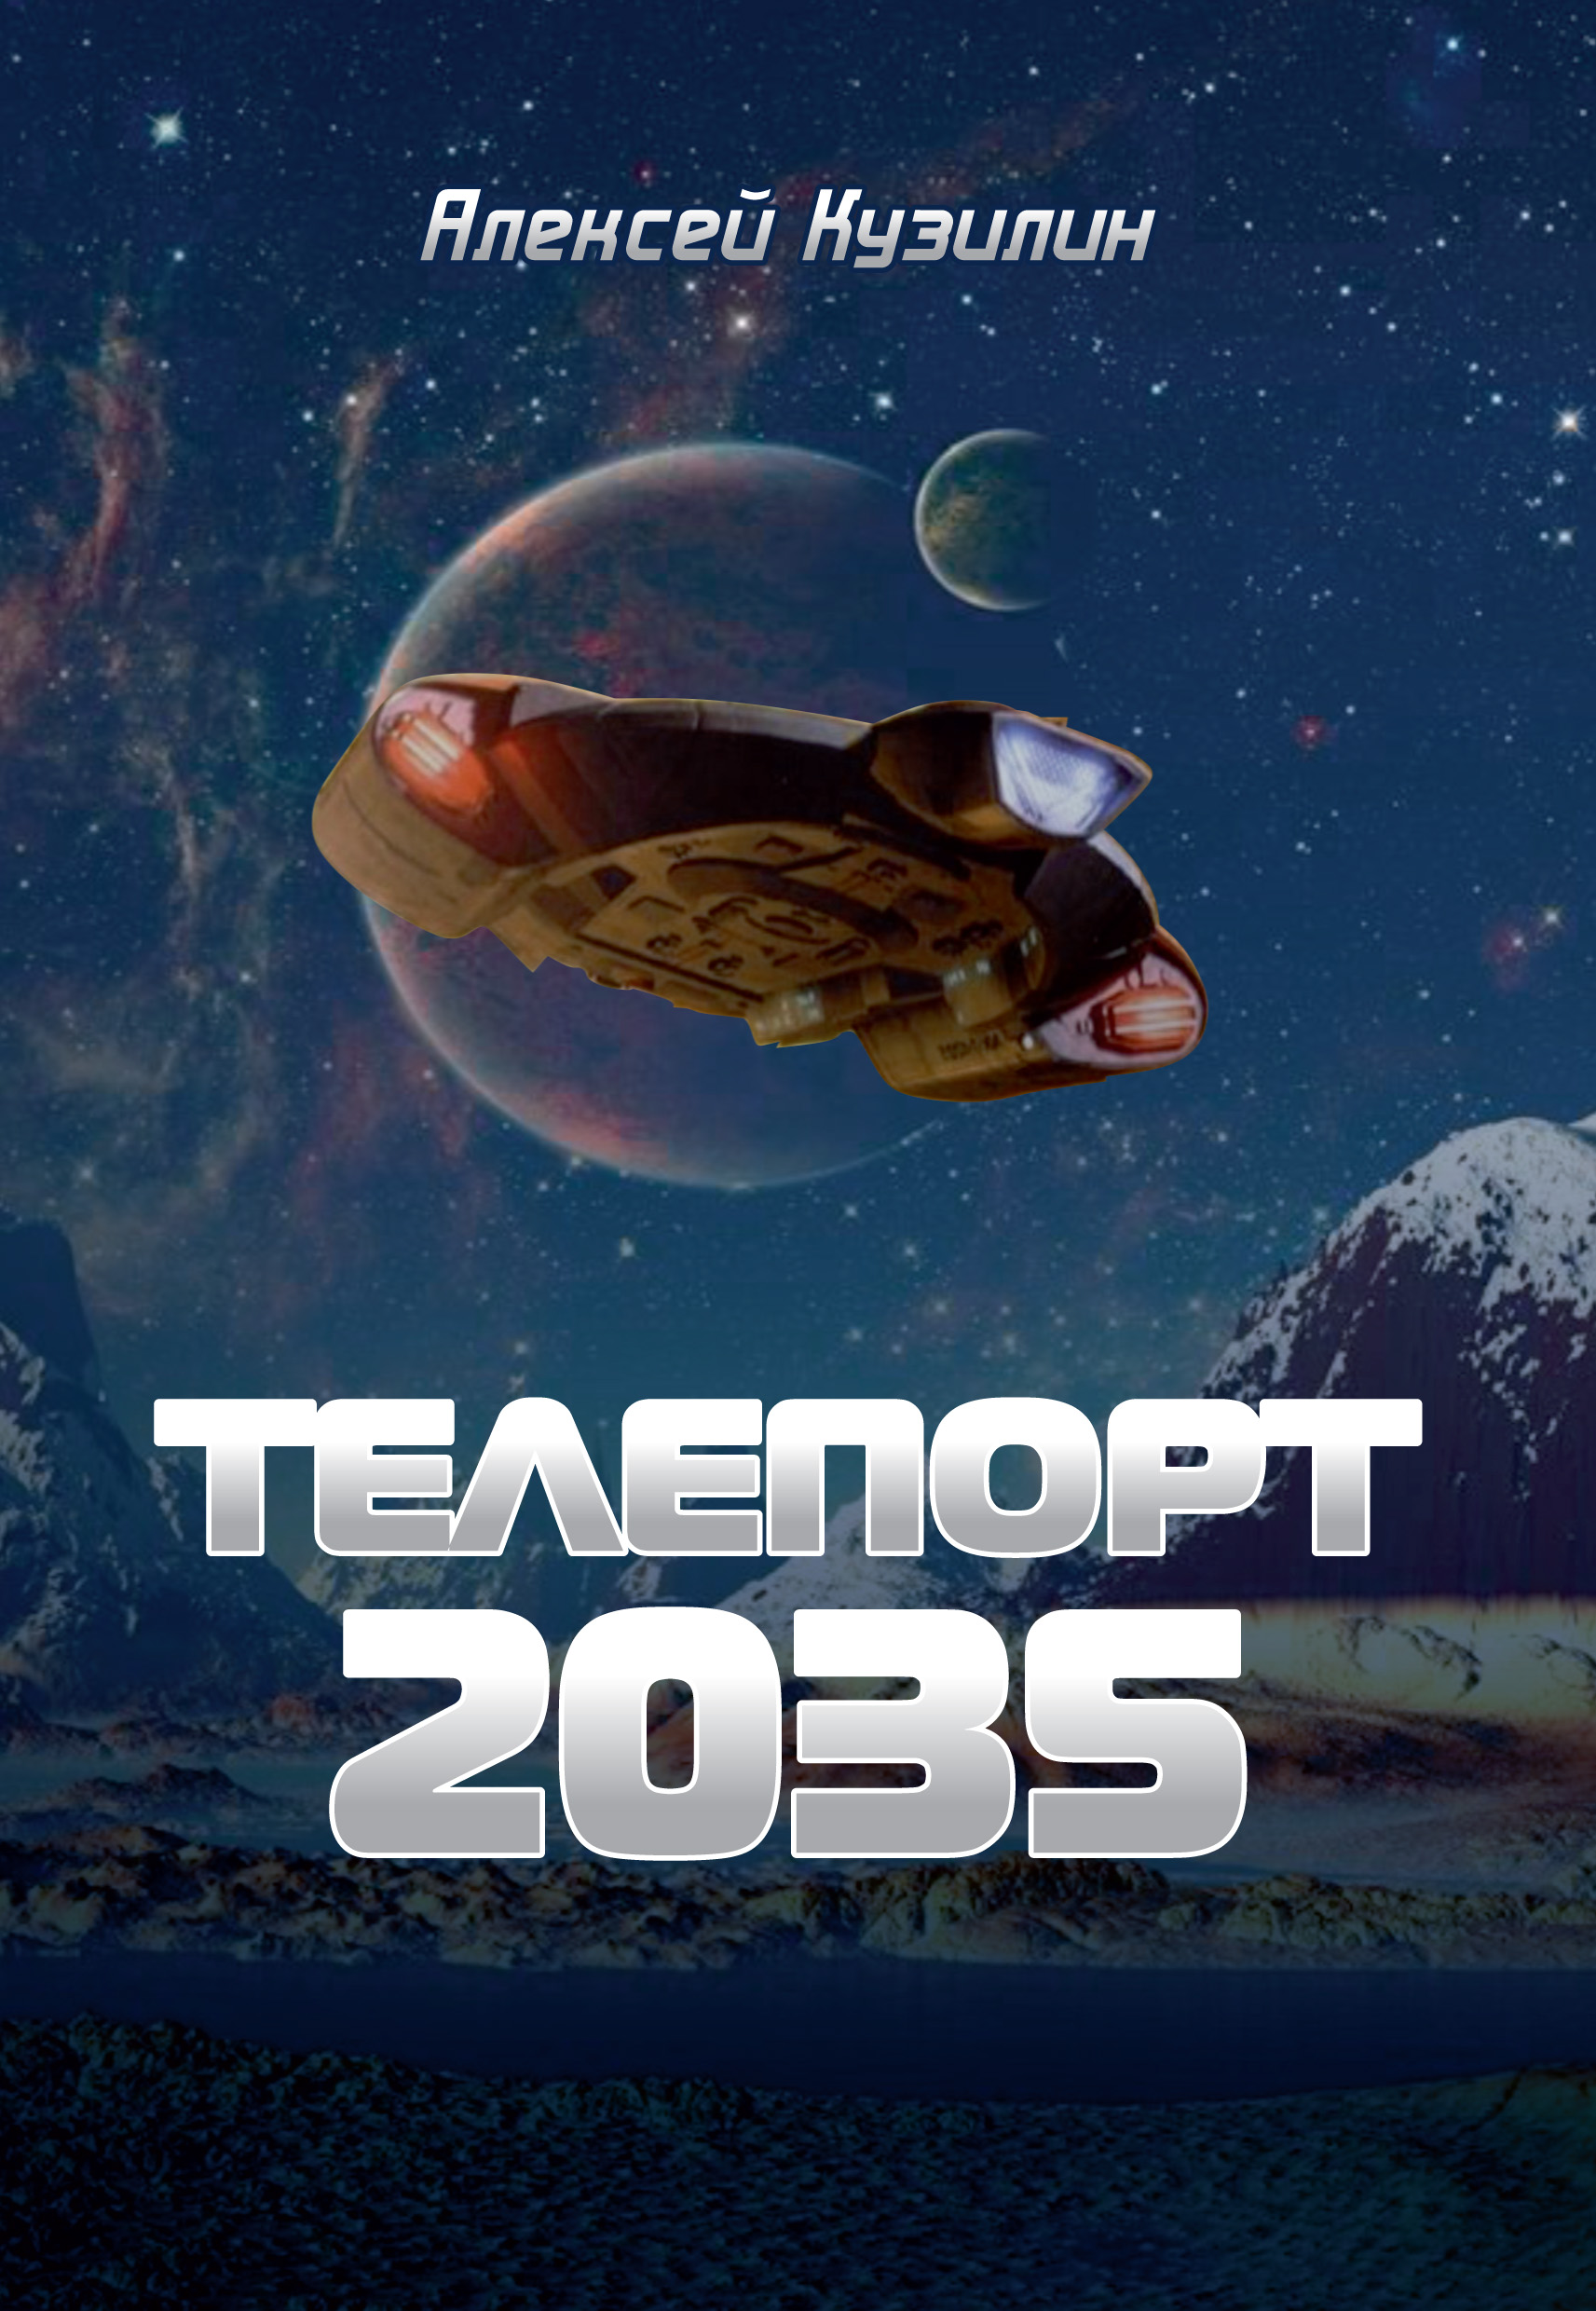 Книга Телепорт 2035 из серии , созданная Алексей Кузилин, может относится к жанру Научная фантастика, О бизнесе популярно. Стоимость электронной книги Телепорт 2035 с идентификатором 27580776 составляет 69.90 руб.